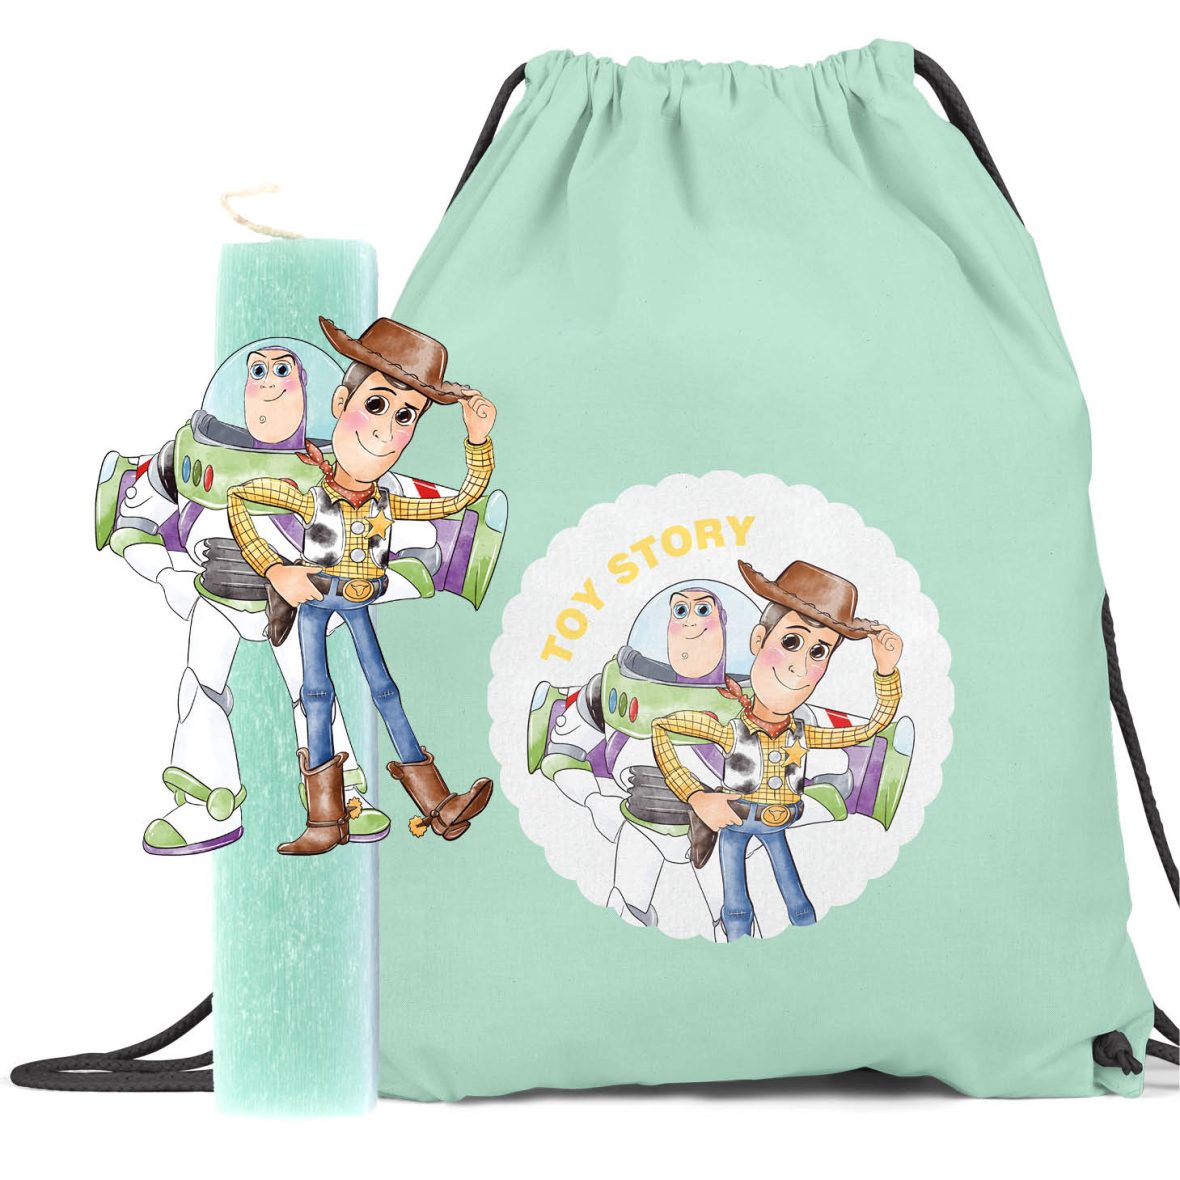 Λαμπάδα με ξύλινη φιγούρα & backpack “Toy Story”